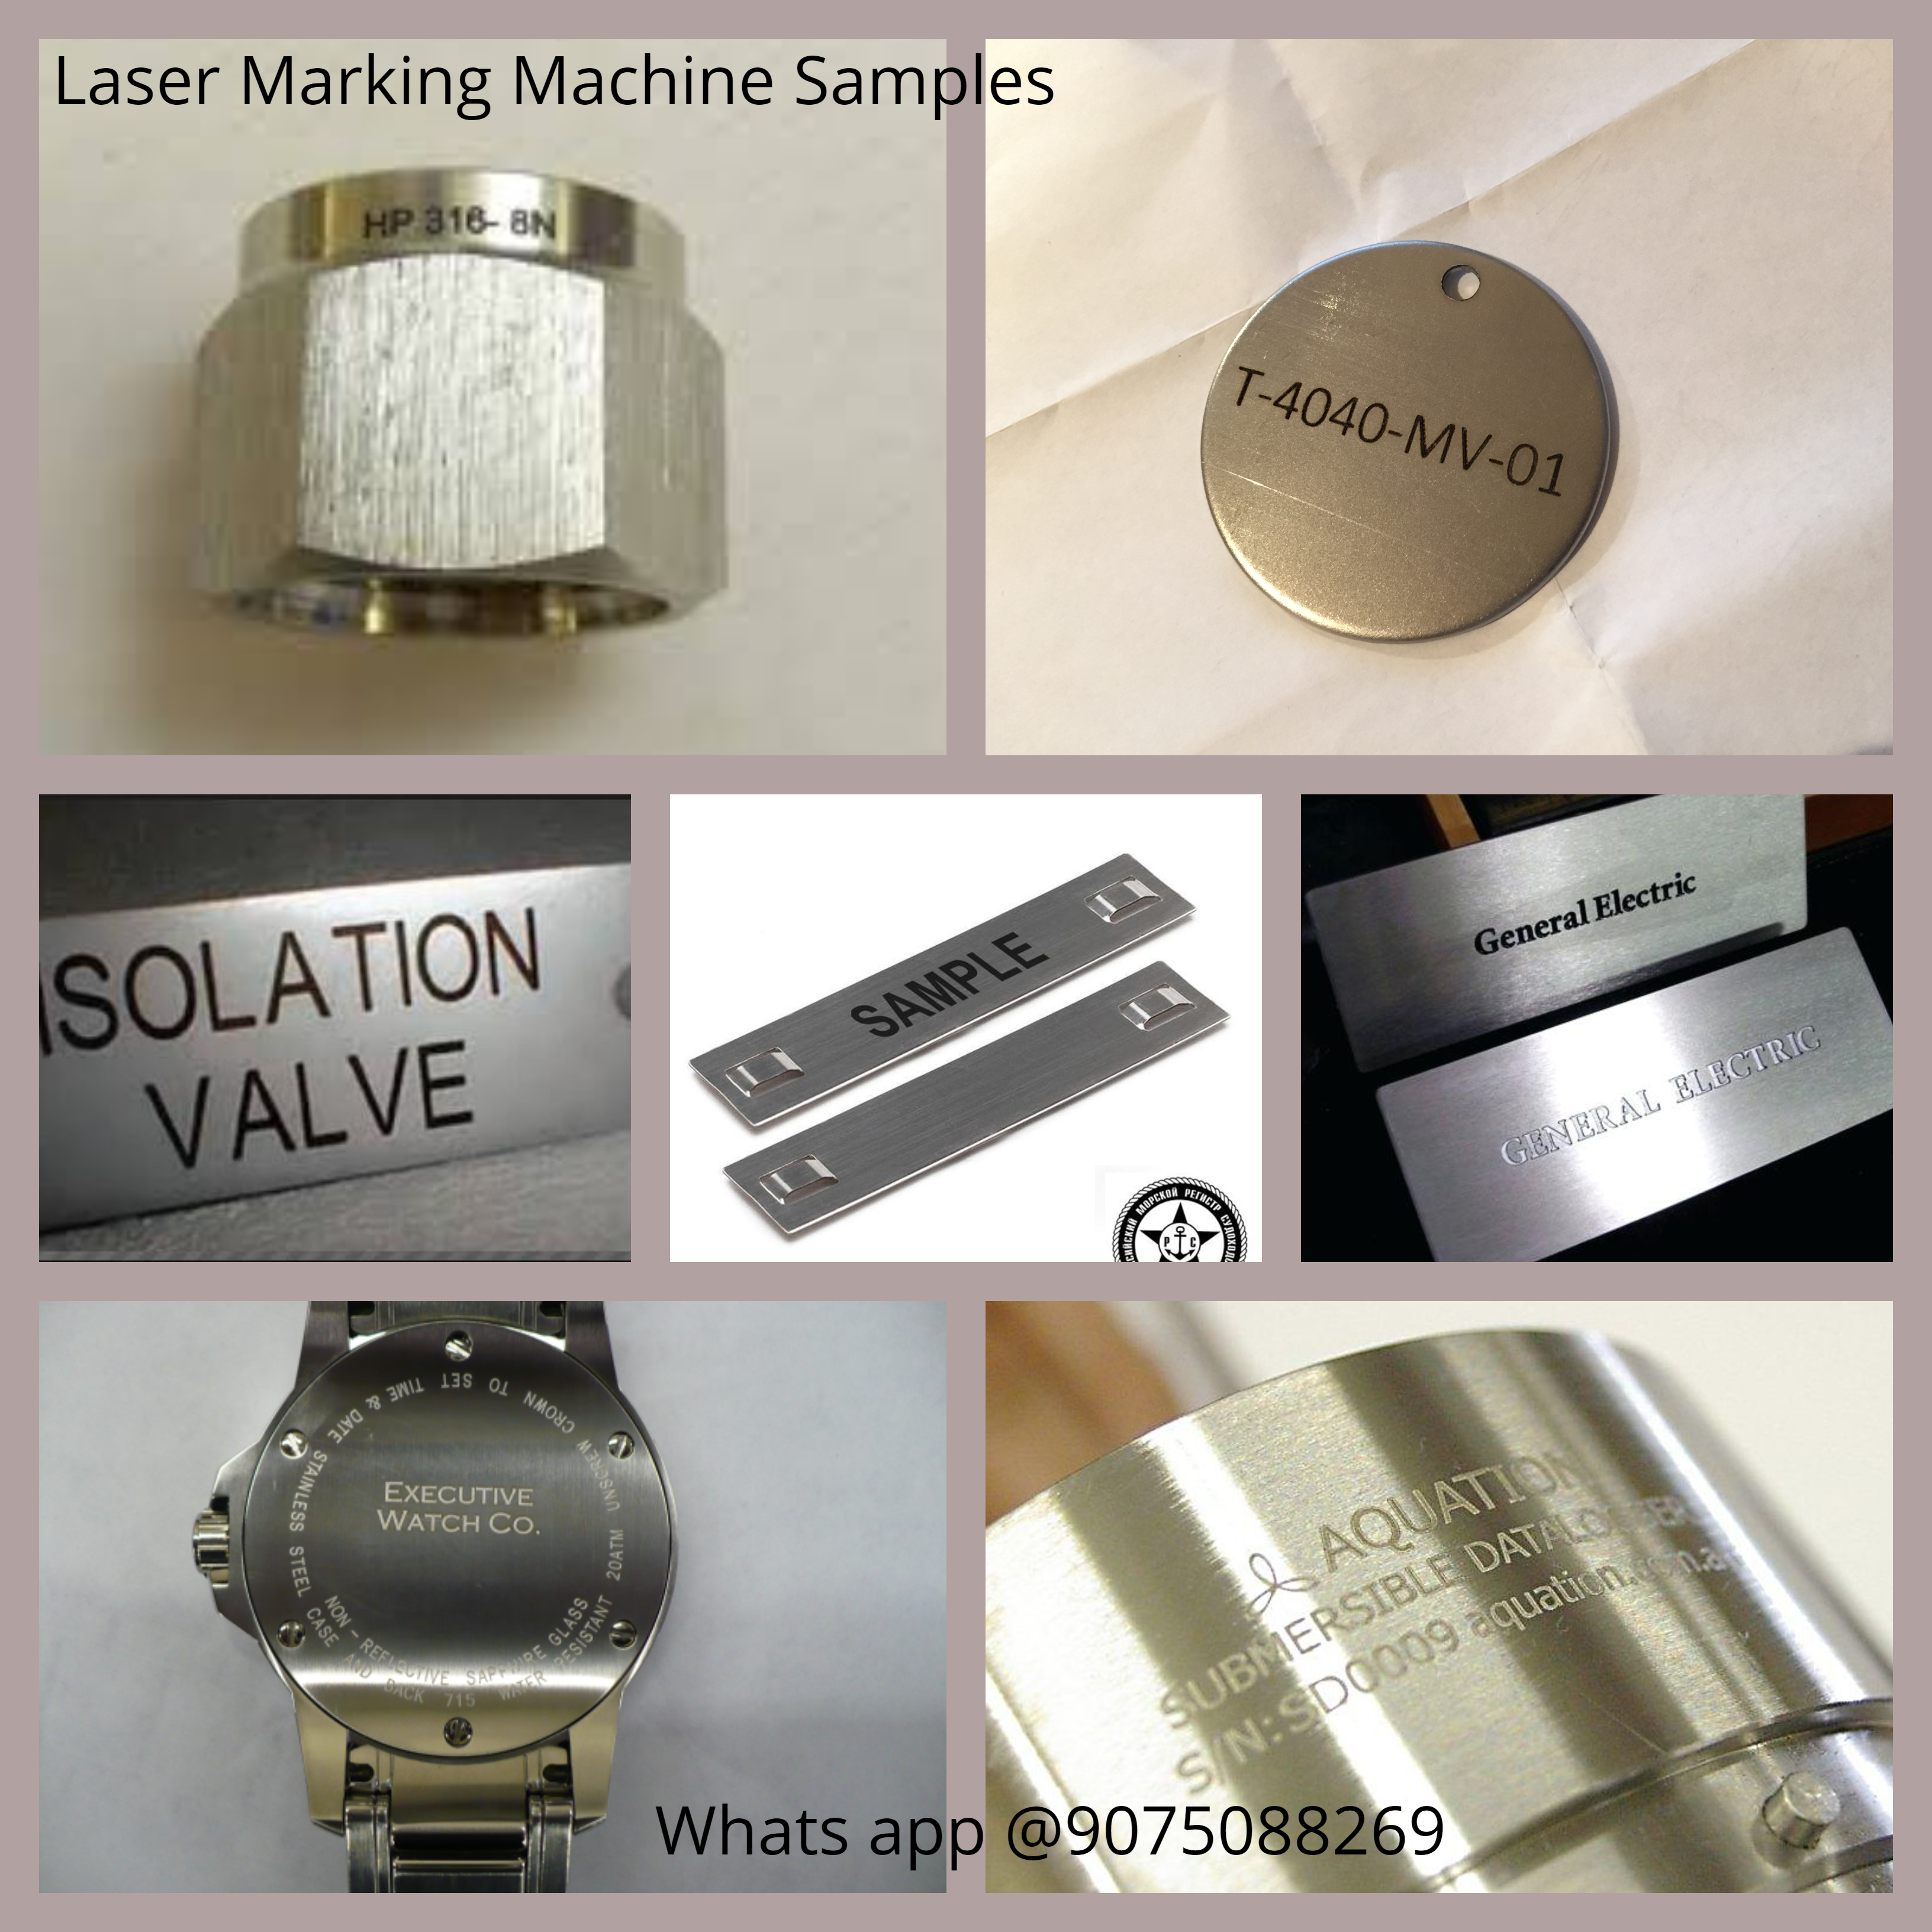 20watt Industrial Laser Marking Machine